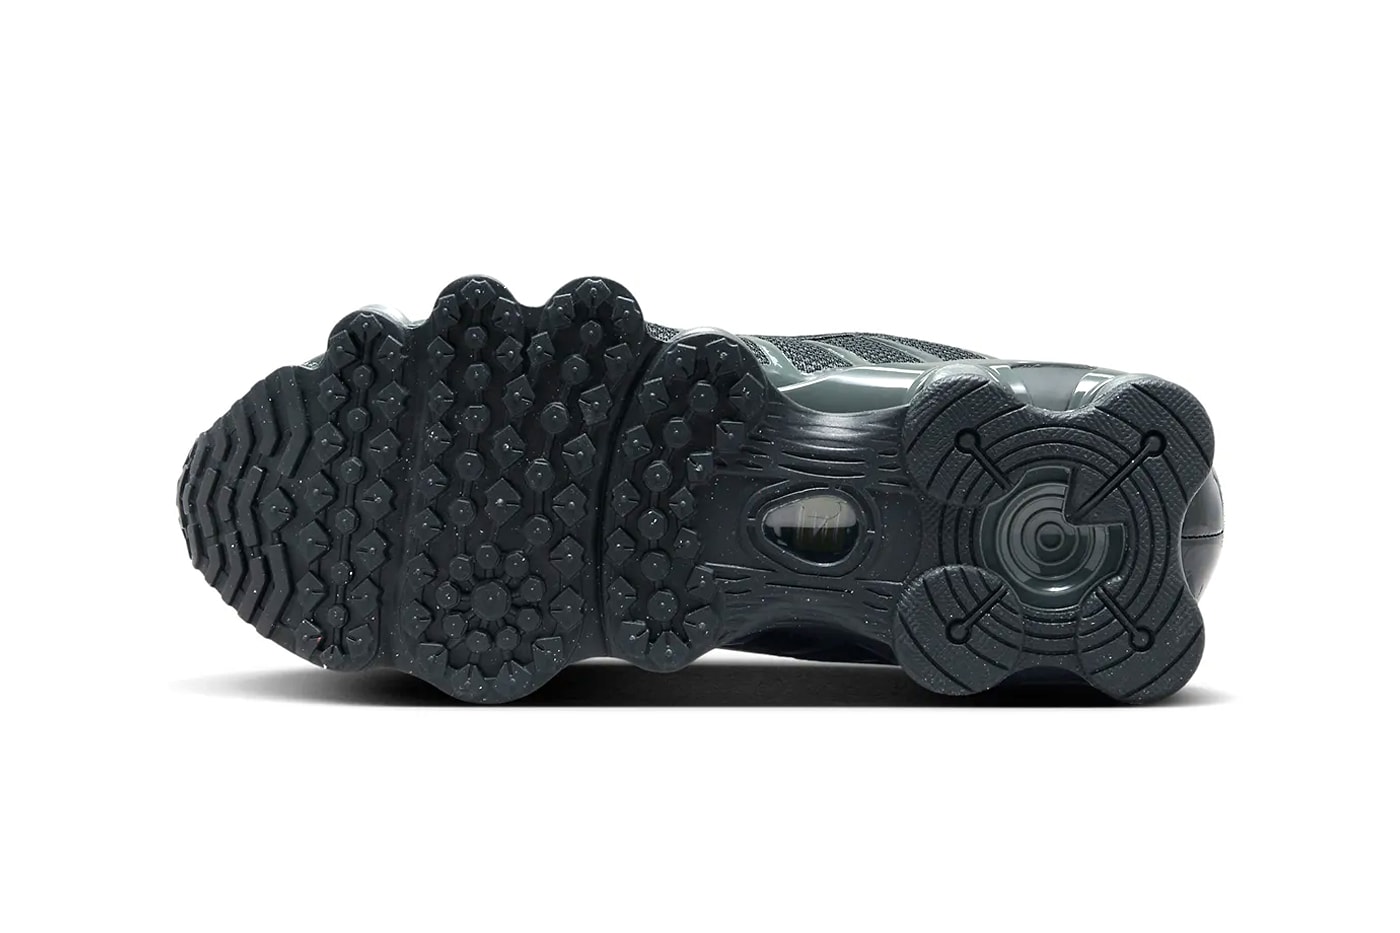 ナイキ ショックス TLから人気カラー “ブラック/グレー”を纏った新作が登場か Nike Shox TL Resurfaces in Sleek "Black/Grey" Colorway FV0939-001 stealthy swoosh technical sneakers martine rose